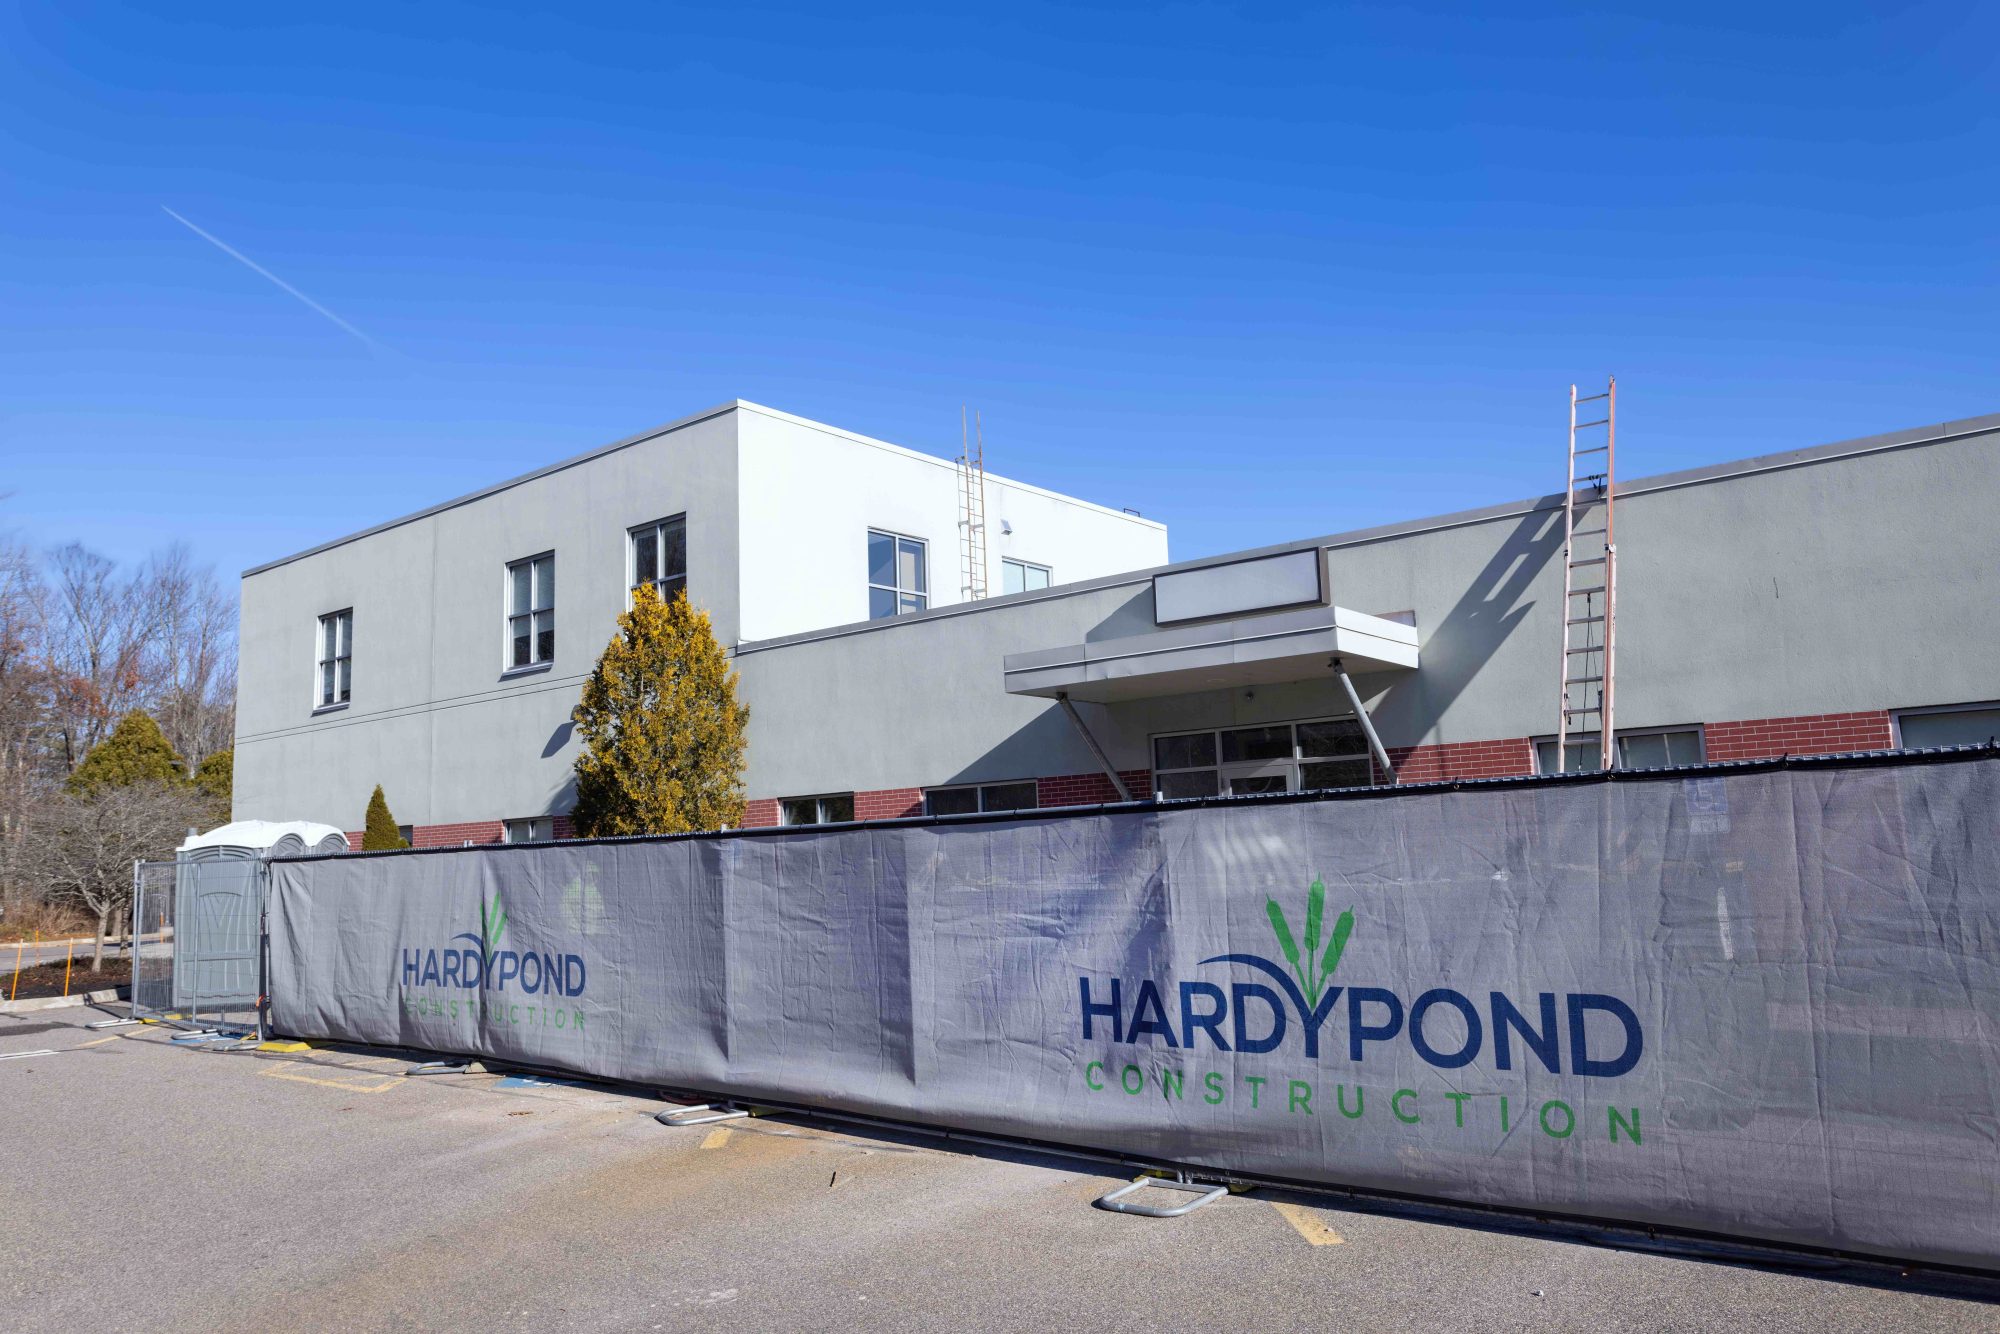 Hardypond branded site wrap